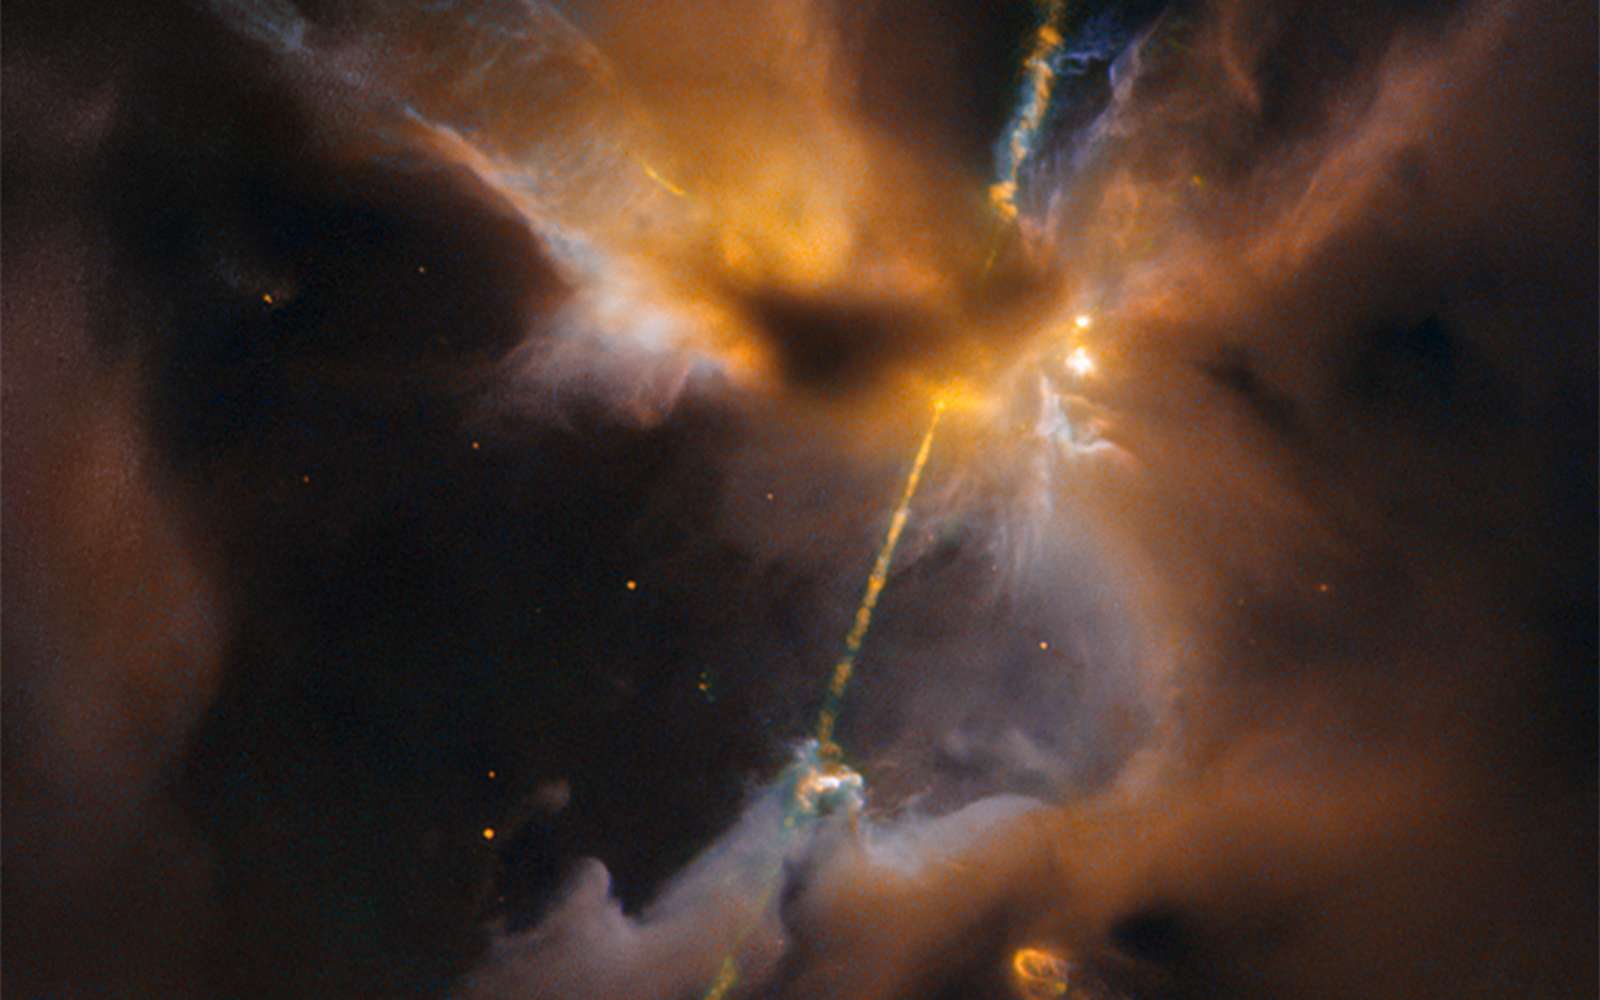 Ce double sabre laser est un objet Herbig-Haro, deux puissants jets expulsés d’une très jeune étoile, qui entrent en collision avec la matière interstellaire. Téléchargez ici l’image en haute résolution. © Nasa, Esa